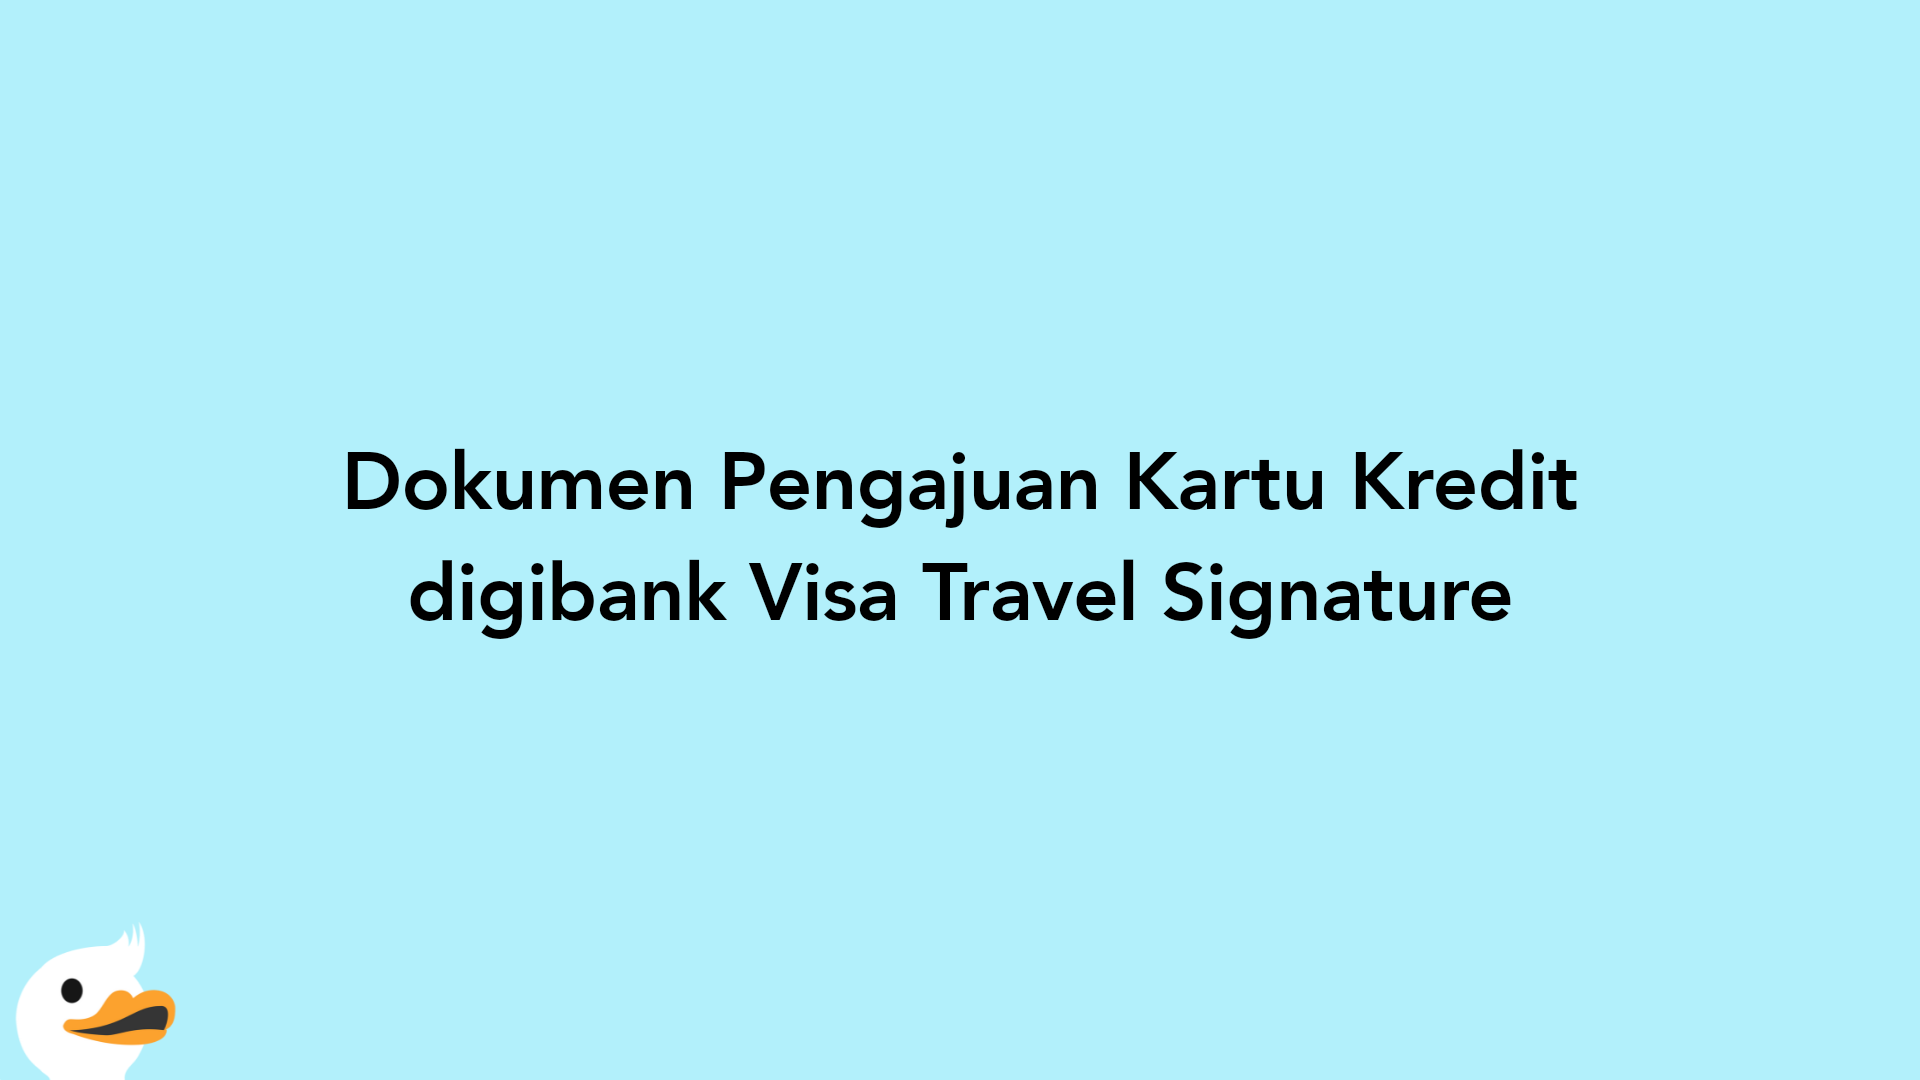 Dokumen Pengajuan Kartu Kredit digibank Visa Travel Signature